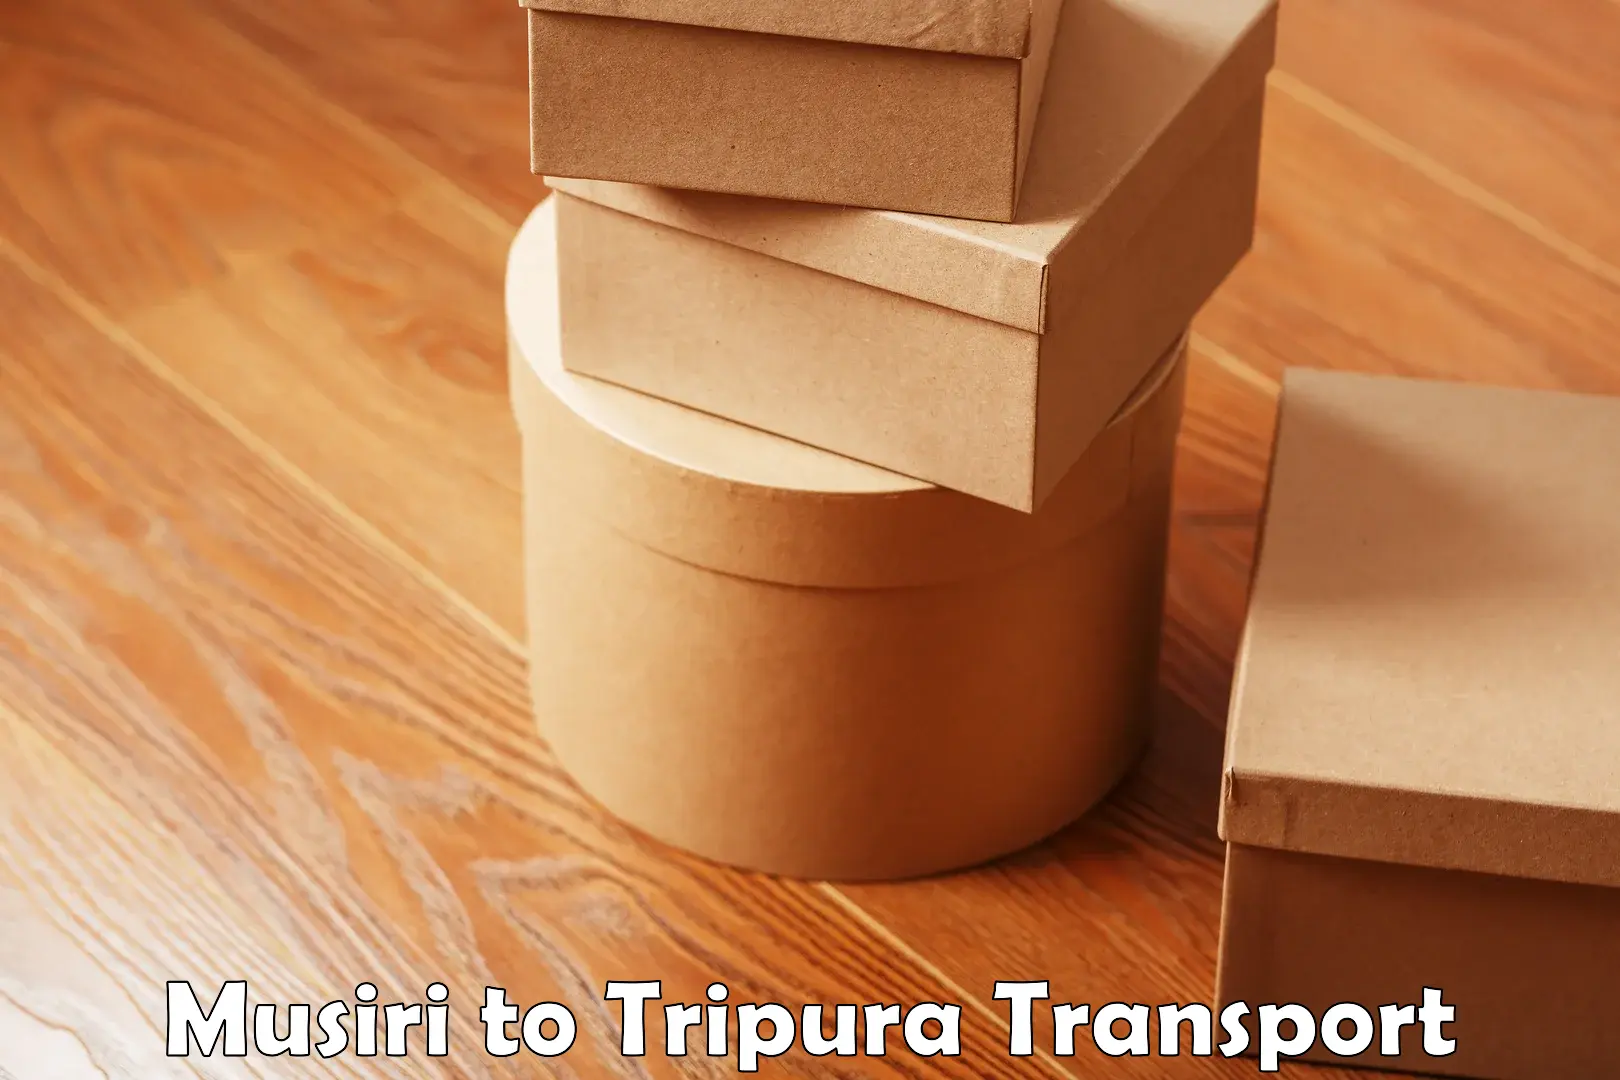 Door to door transport services Musiri to Udaipur Tripura